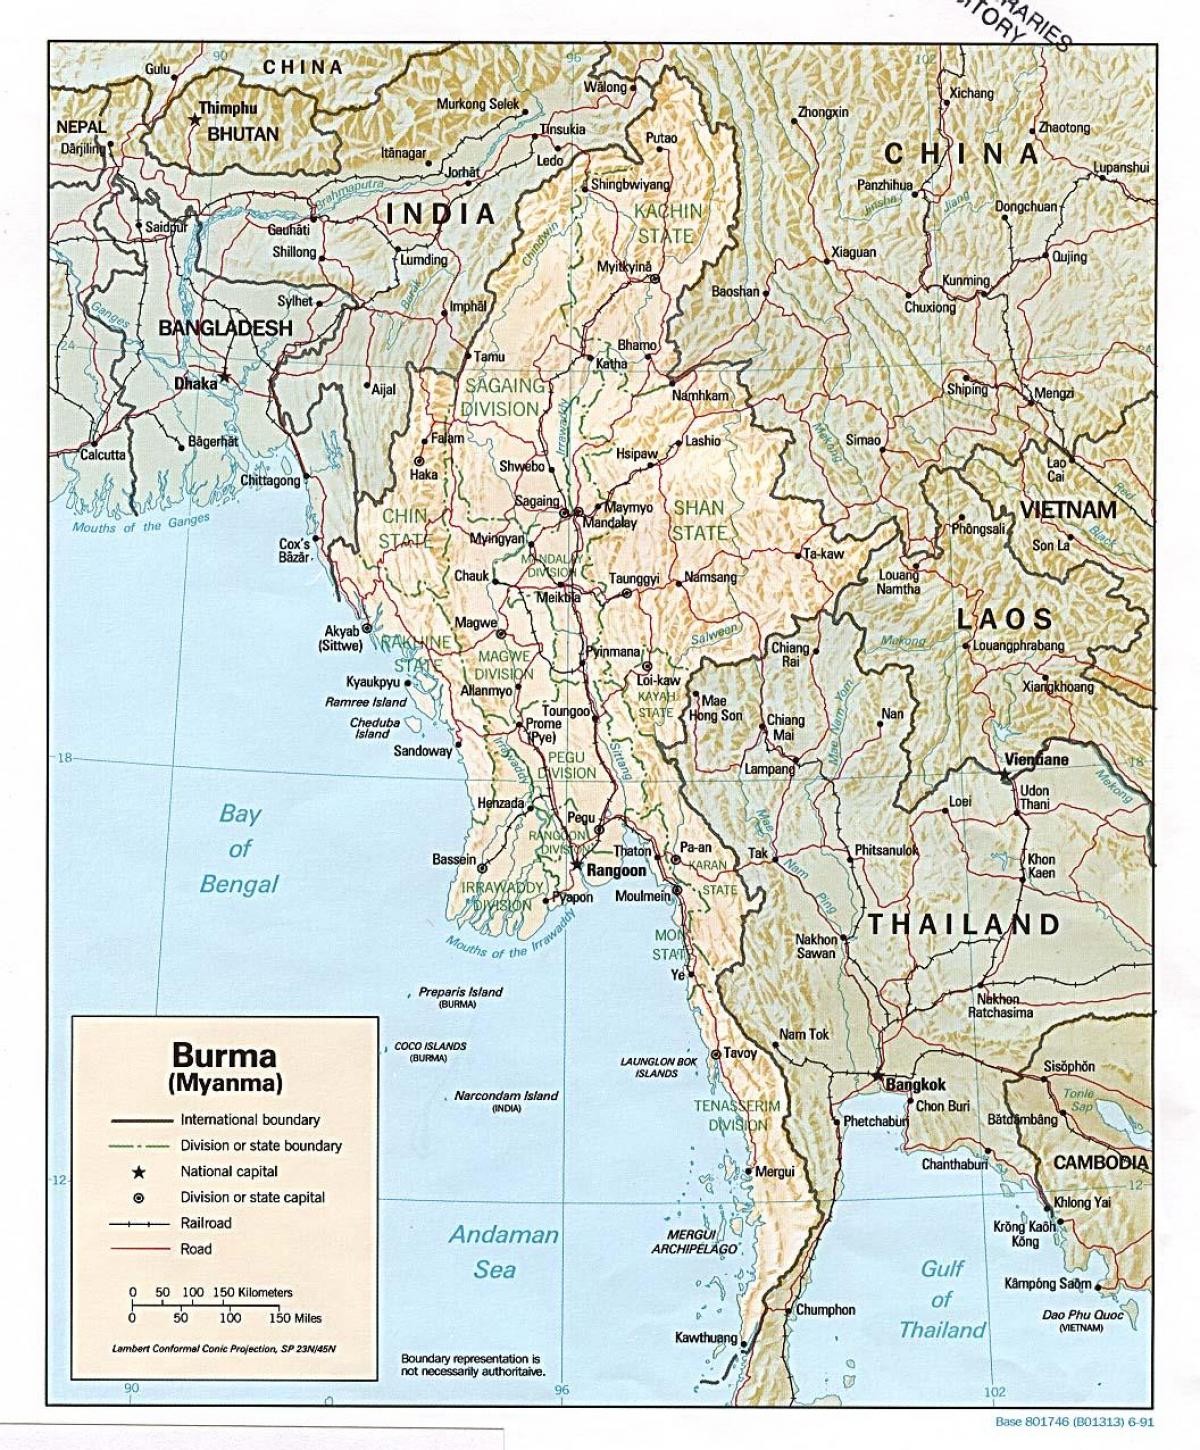 آفلاین نقشه میانمار